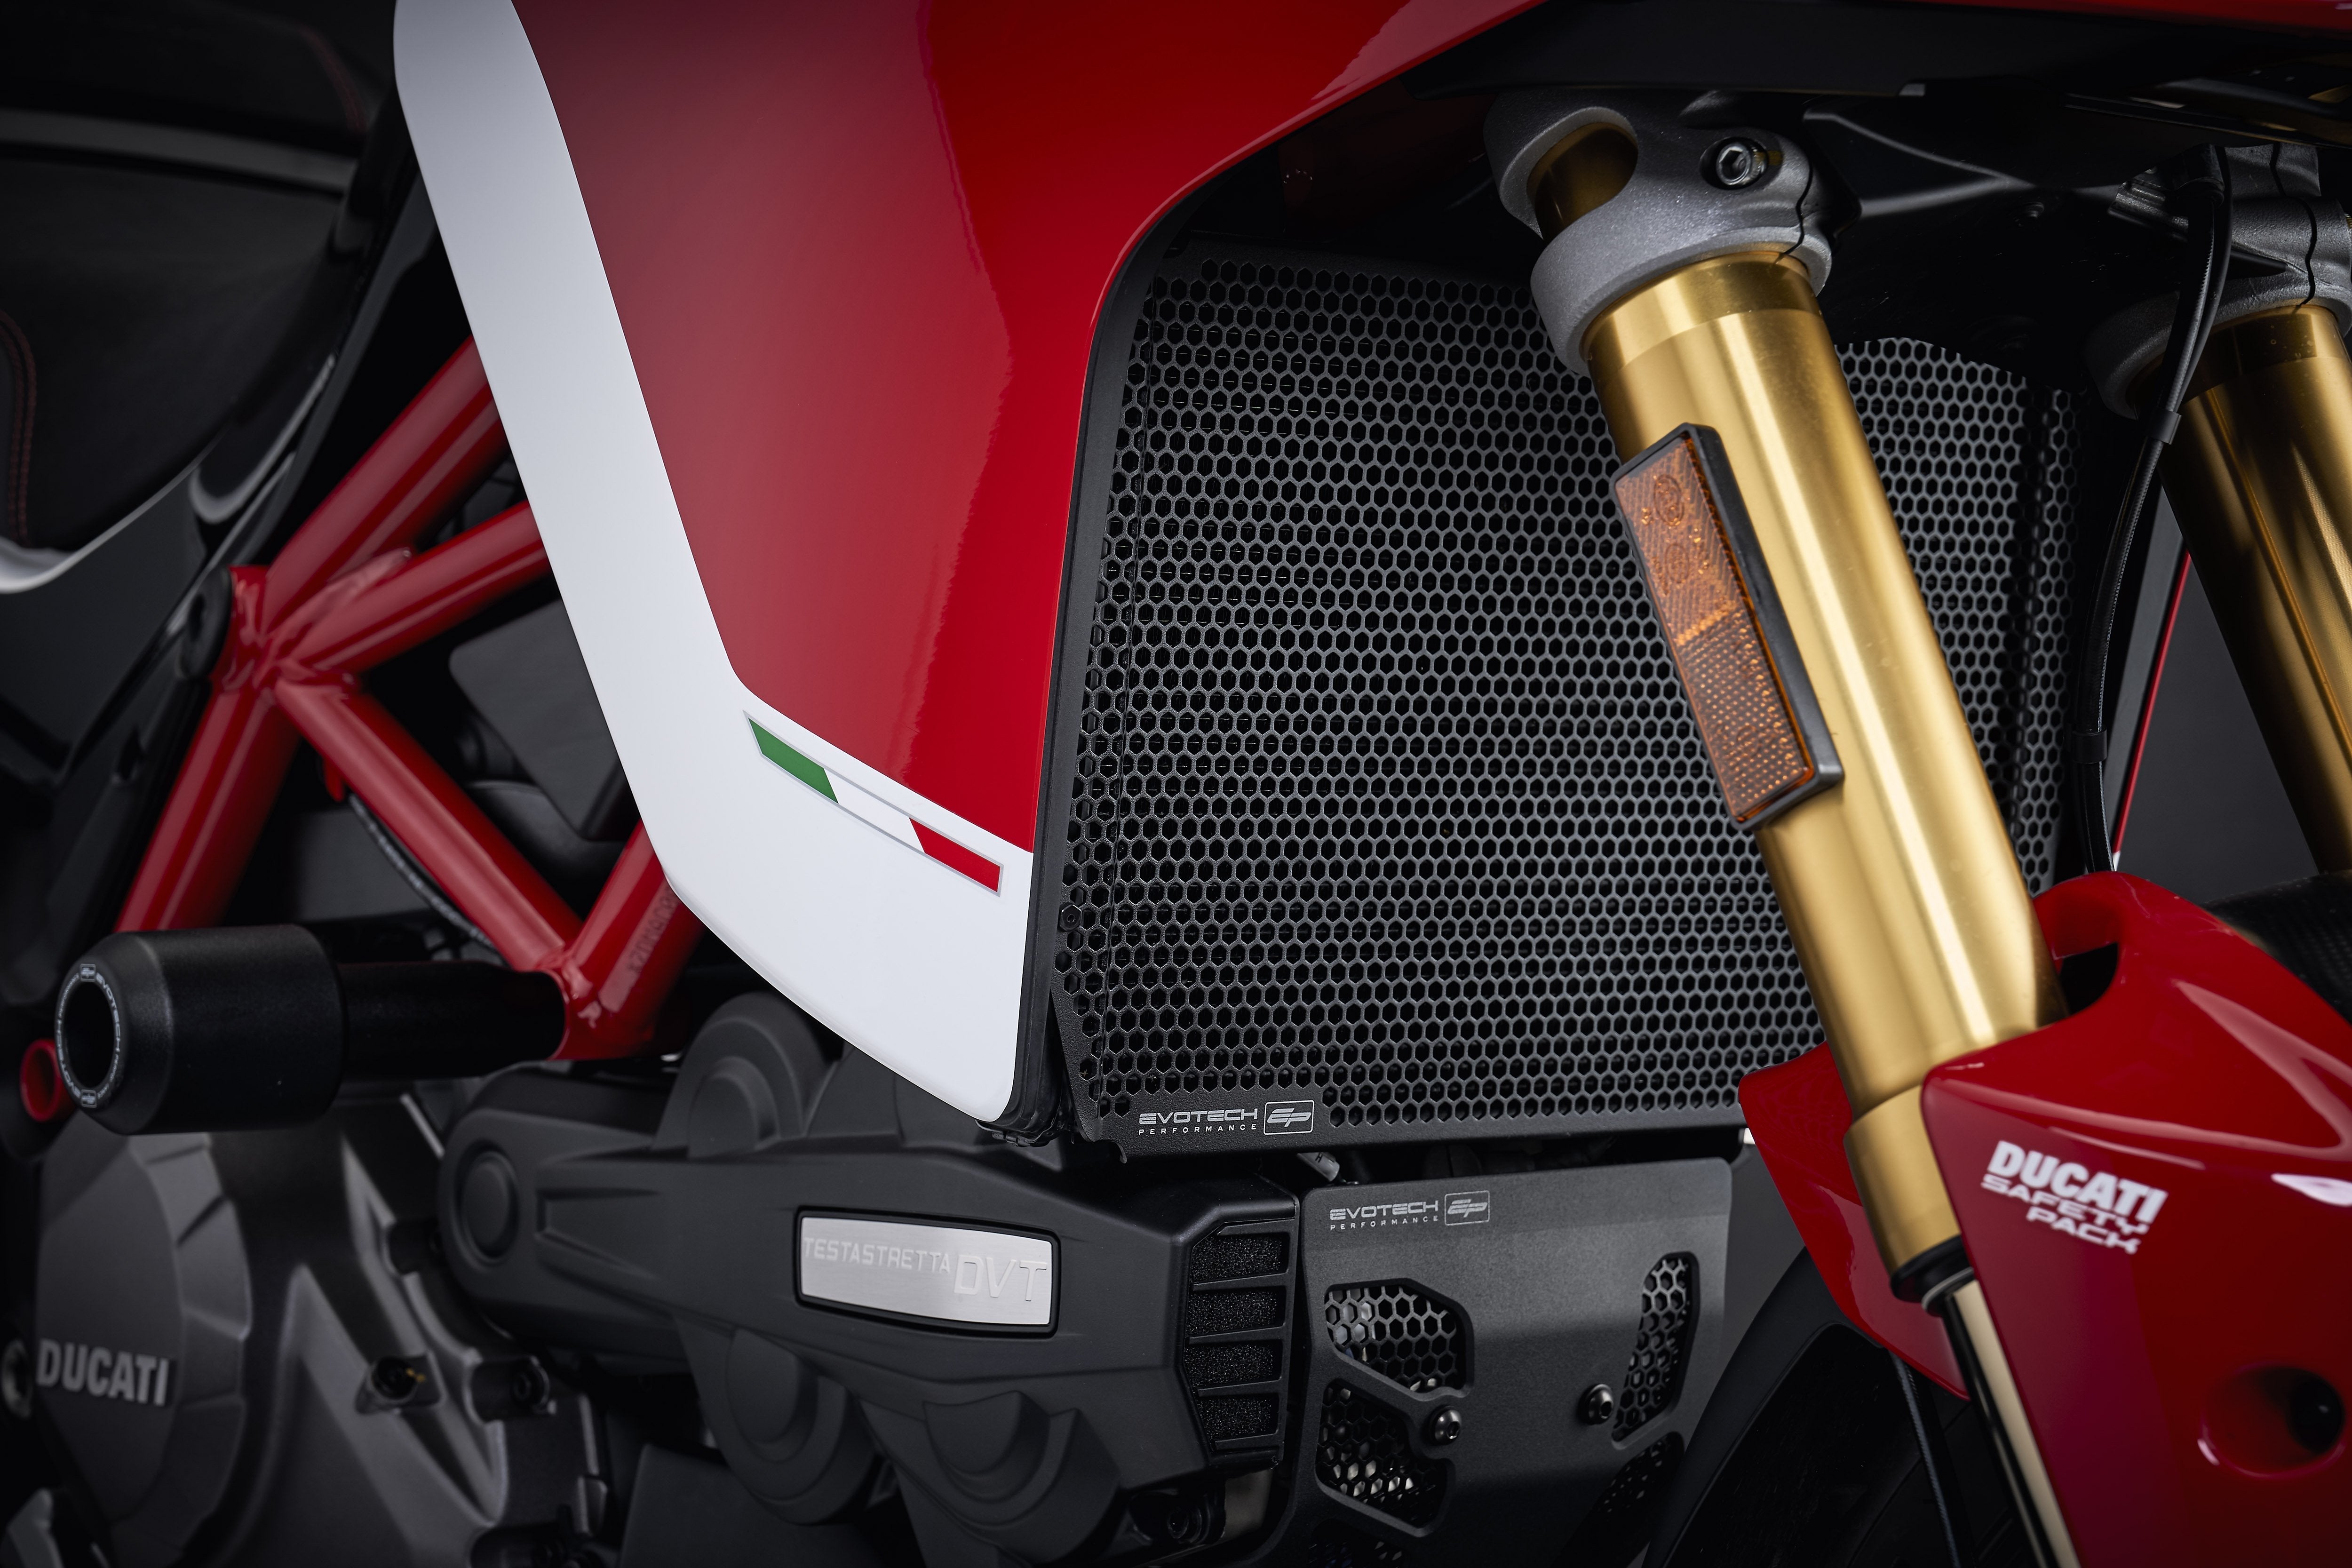 EP Ducati Multistrada 1200 S Radiator Guard 2015 - 2017